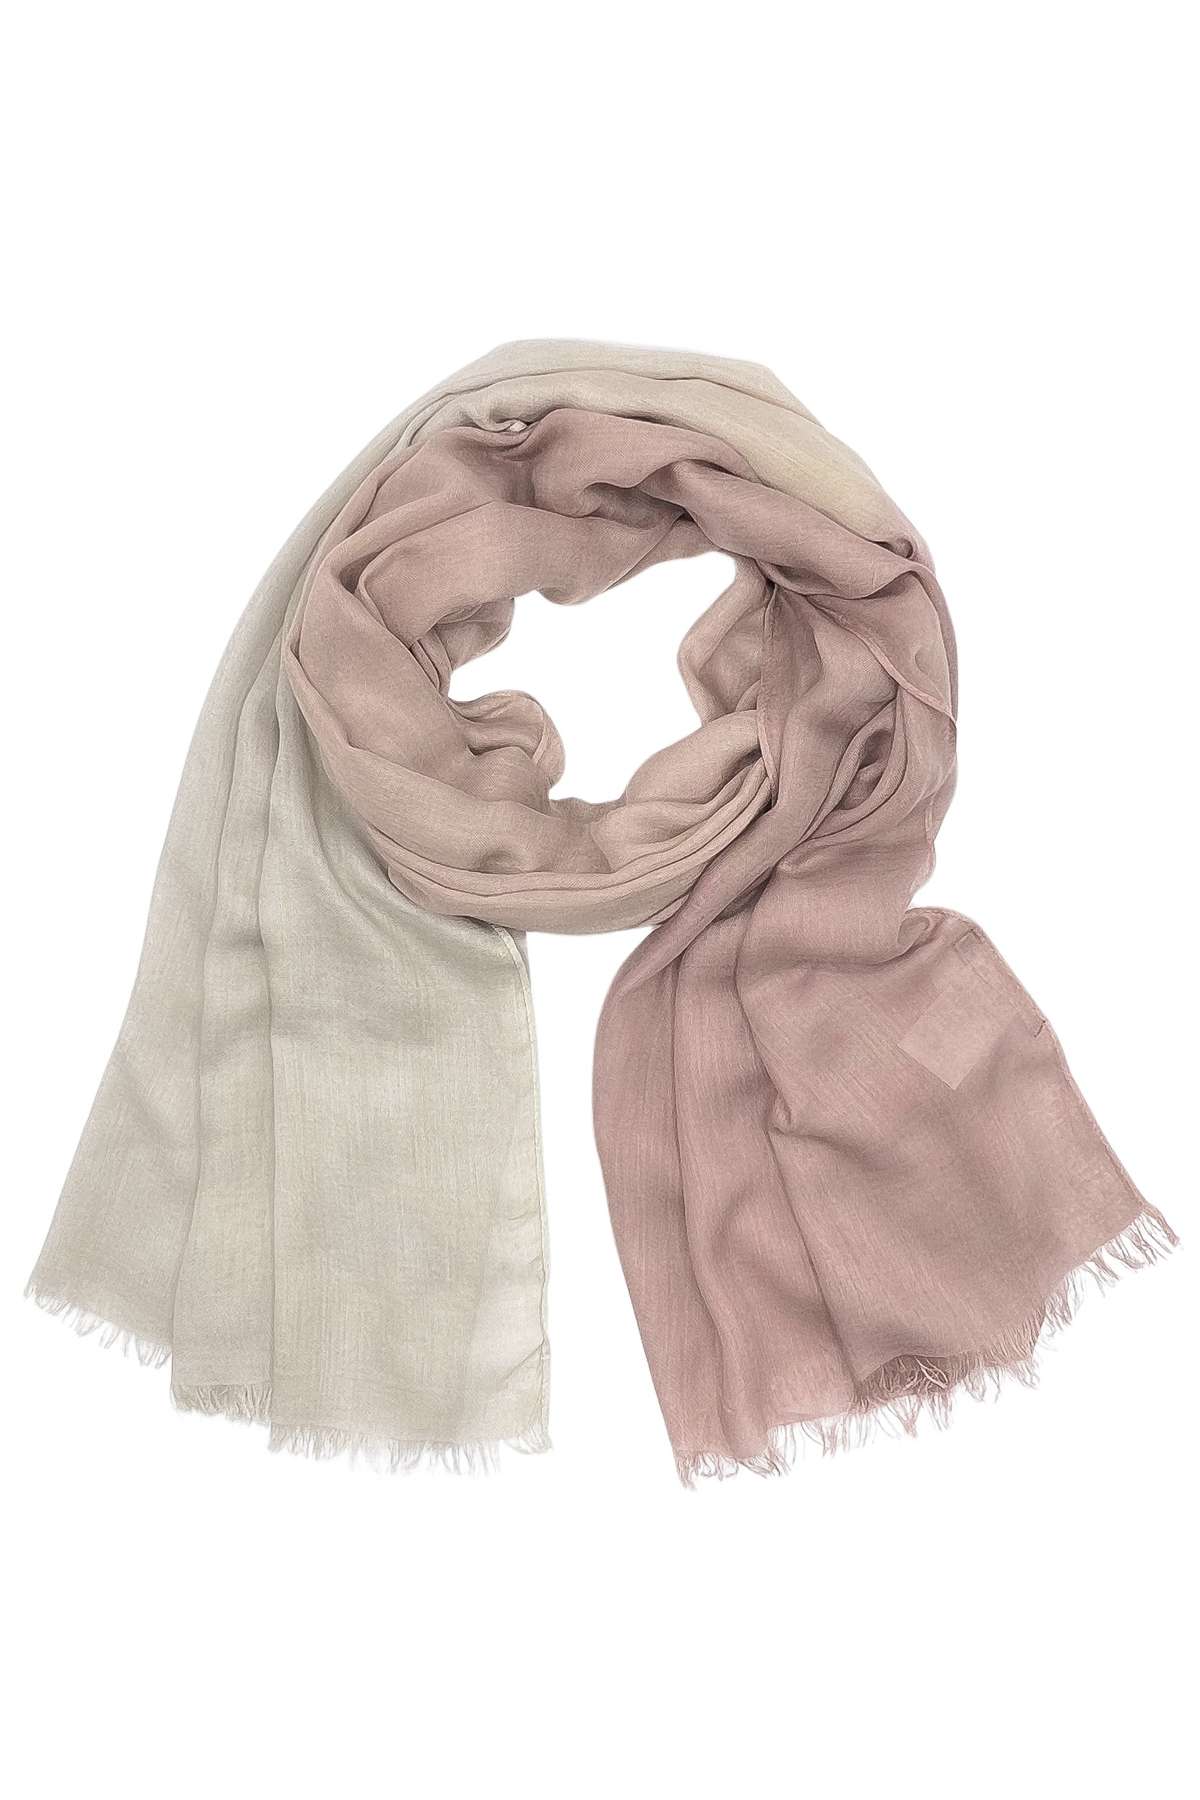 Модный шарф (1 штука), разные бежево-розовые тона.